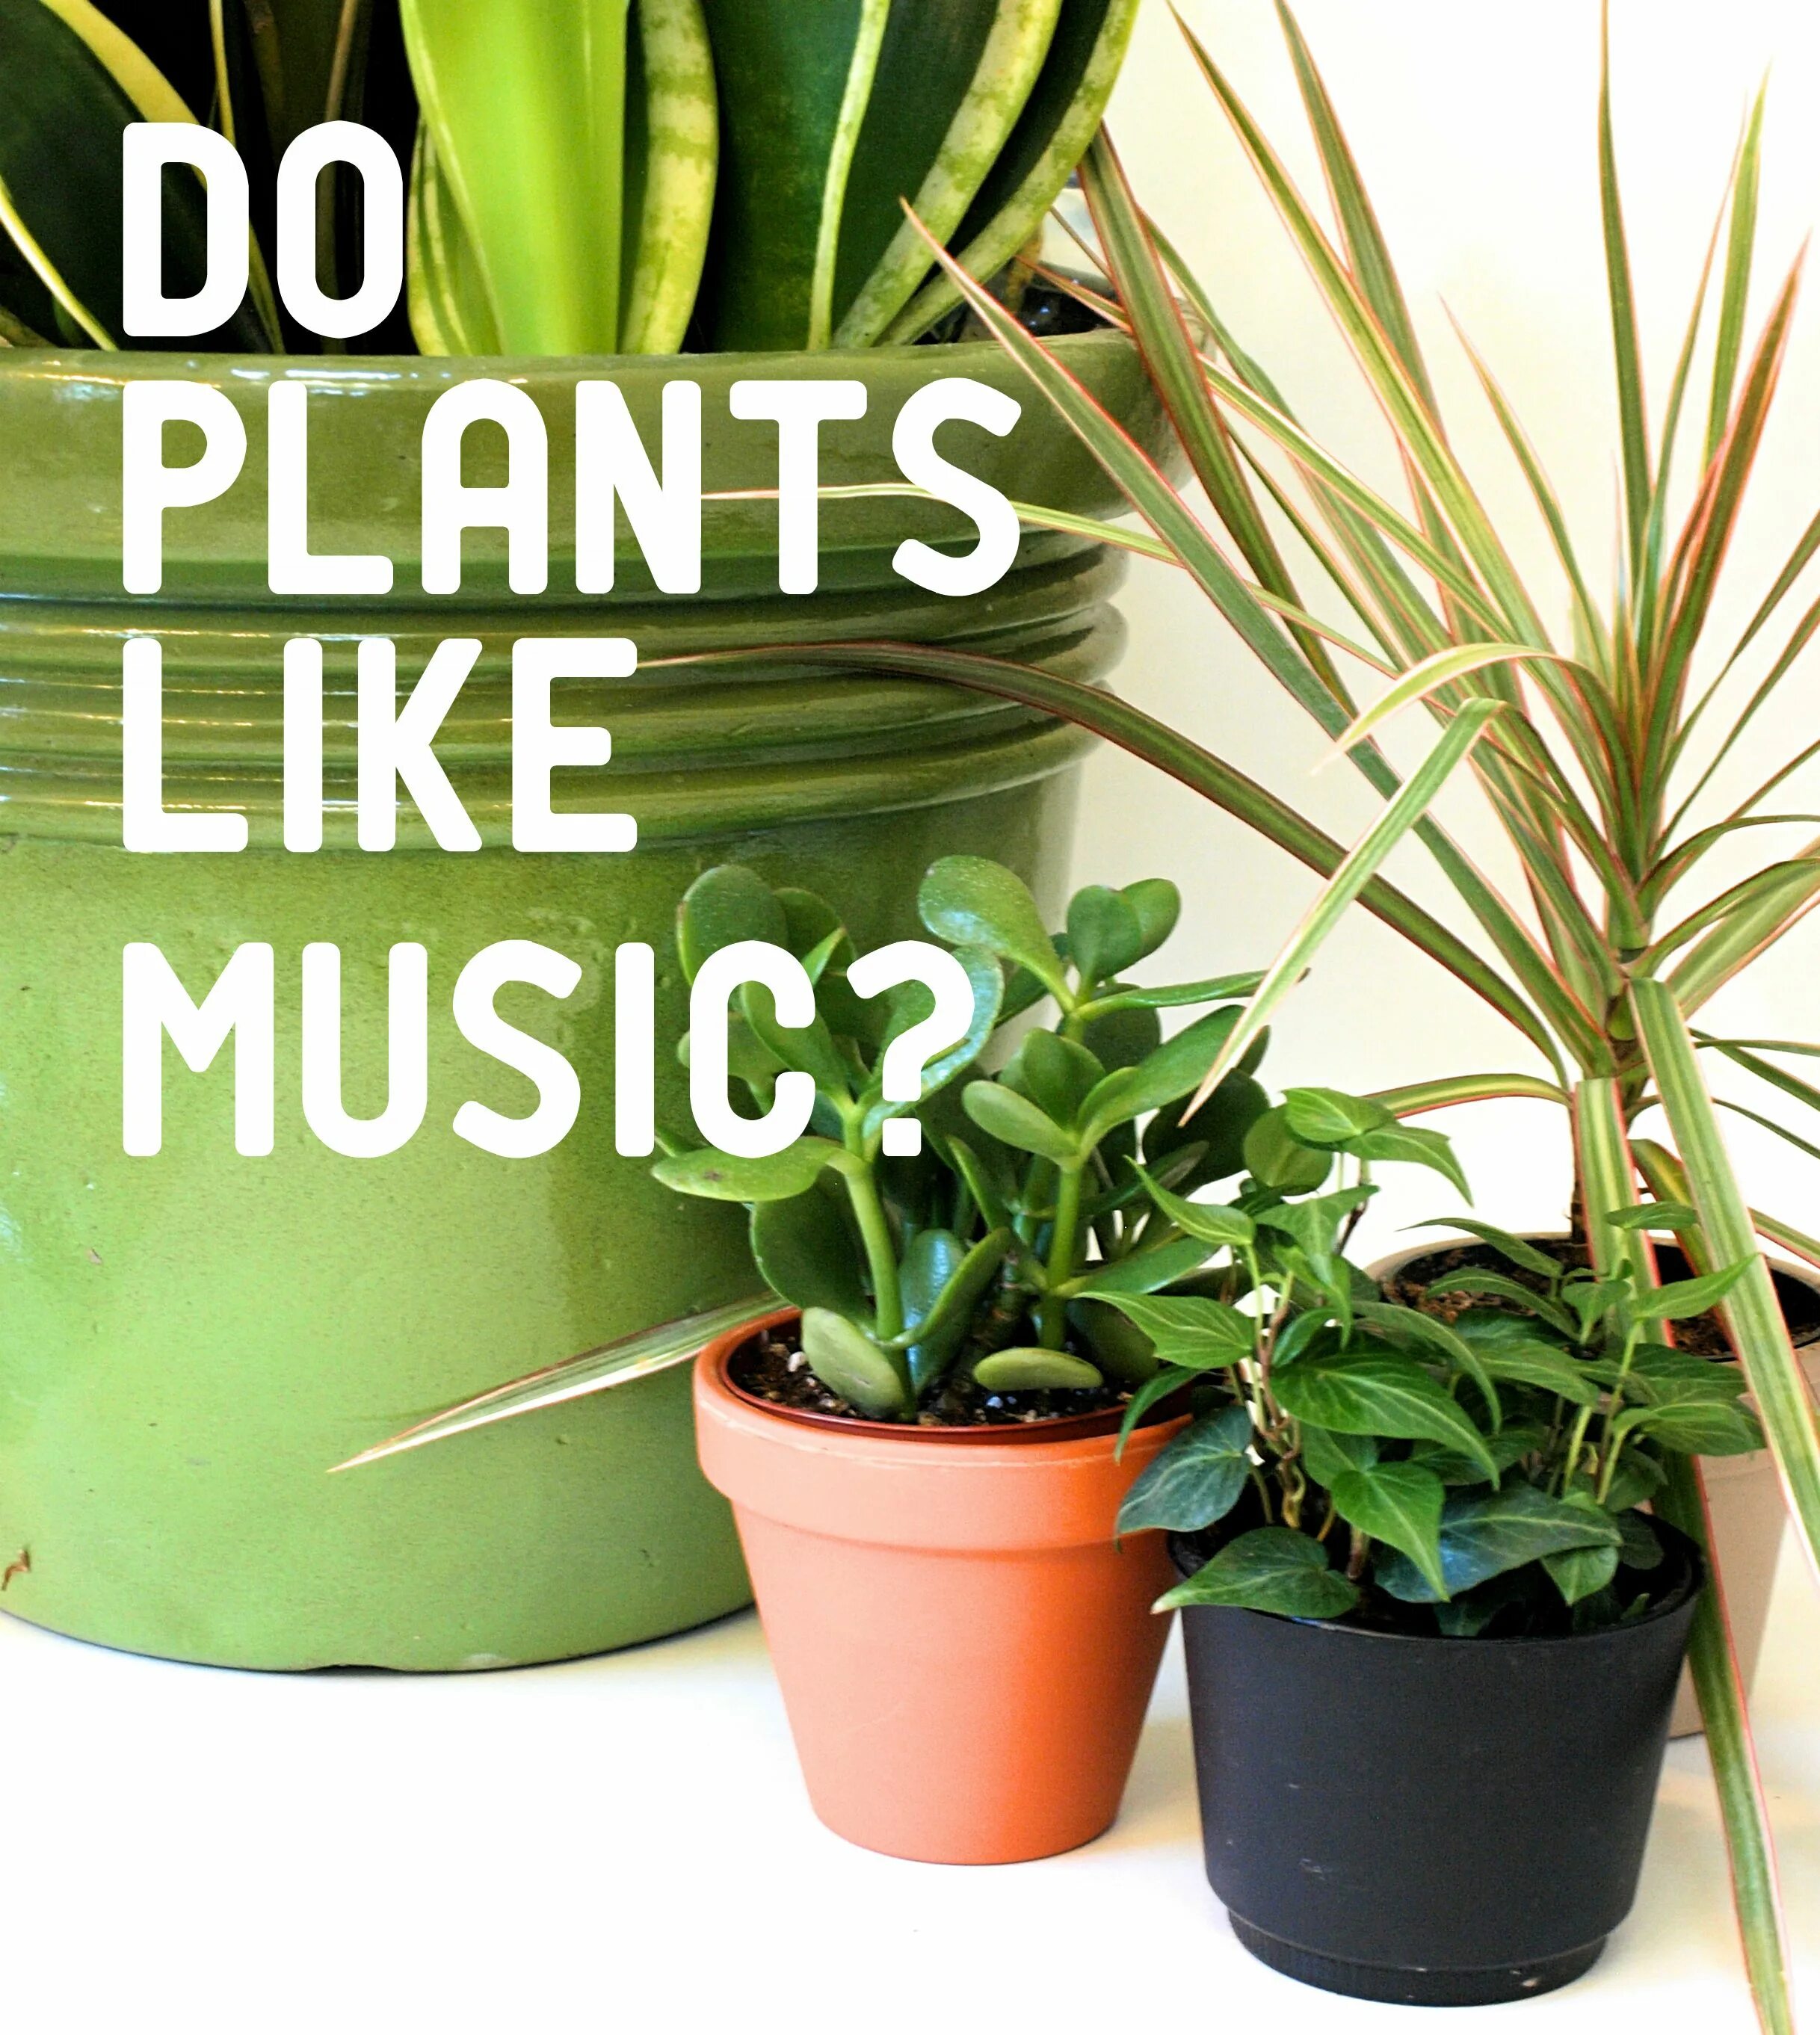 Мьюзик Плант. Музыка и растения. Лучшая копия Plants. Music Plant Korea. Effect plants